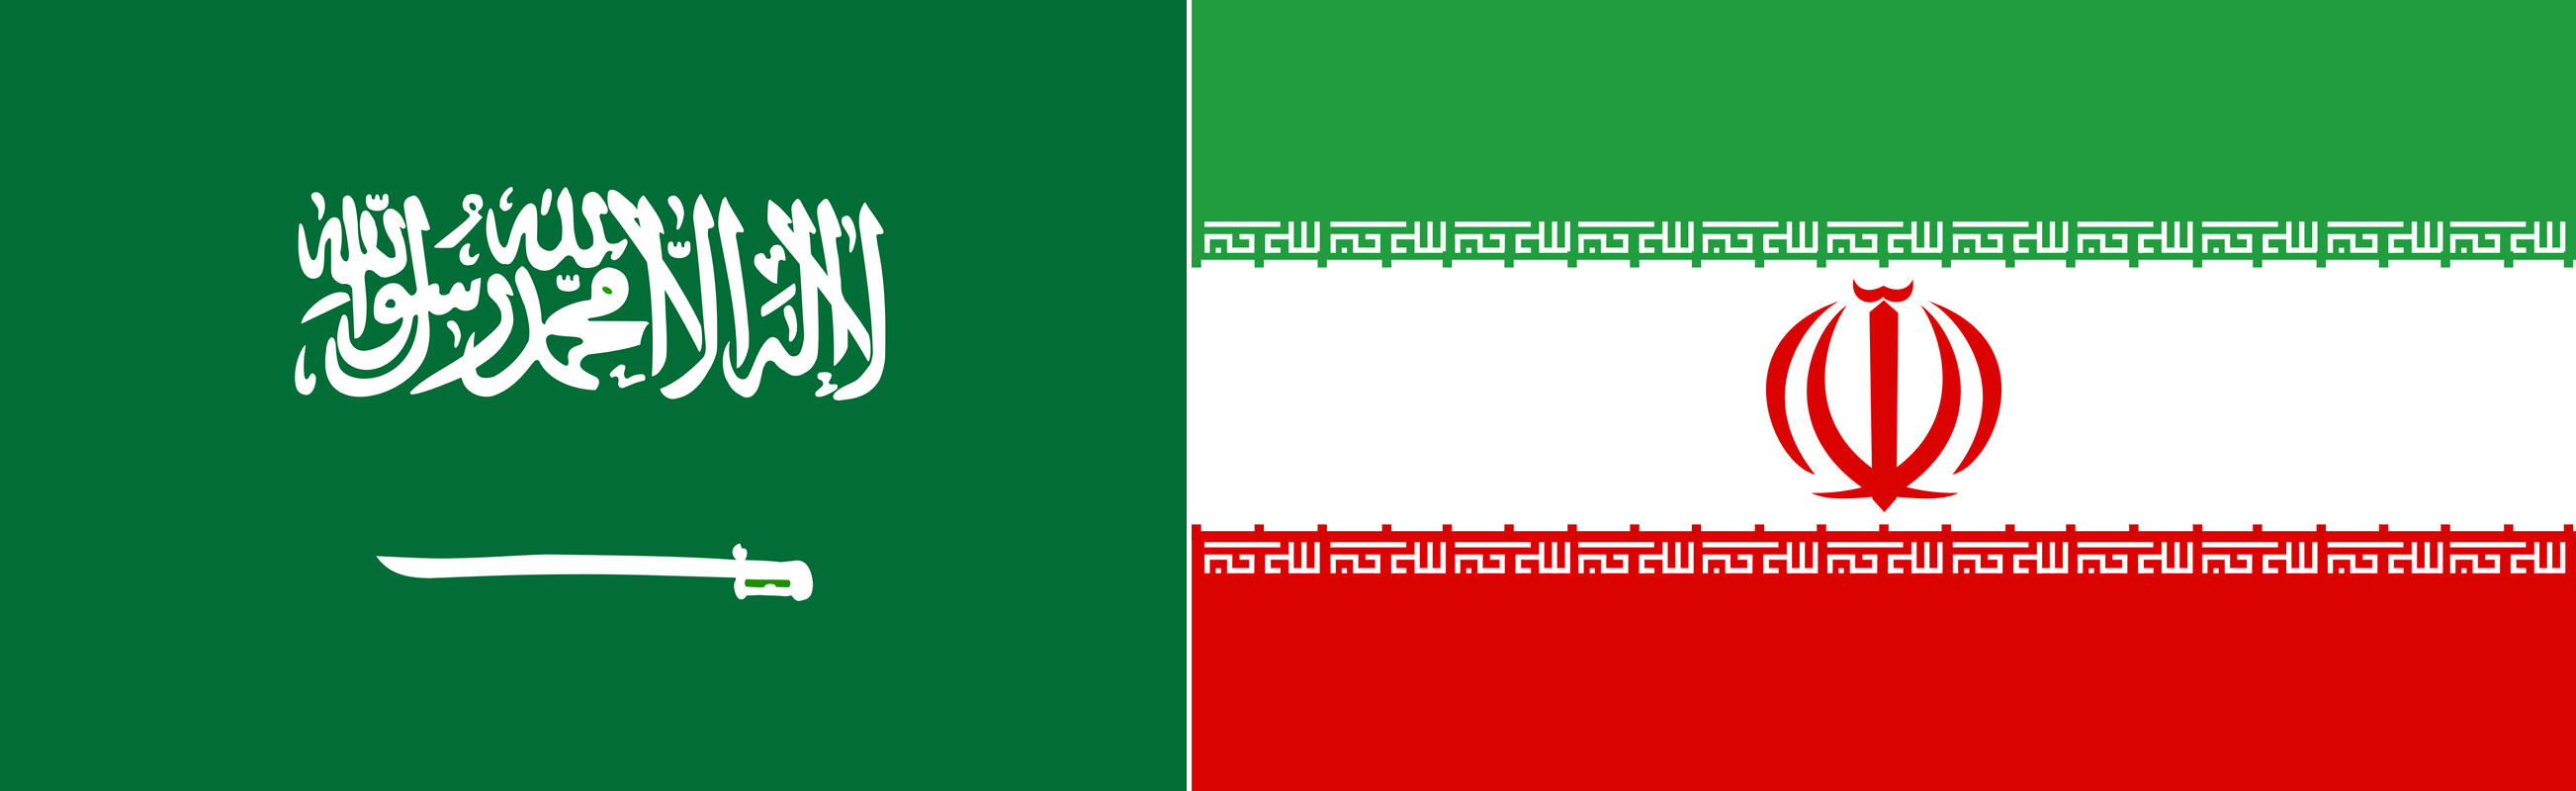 Flags of Saudi Arabia and Iran